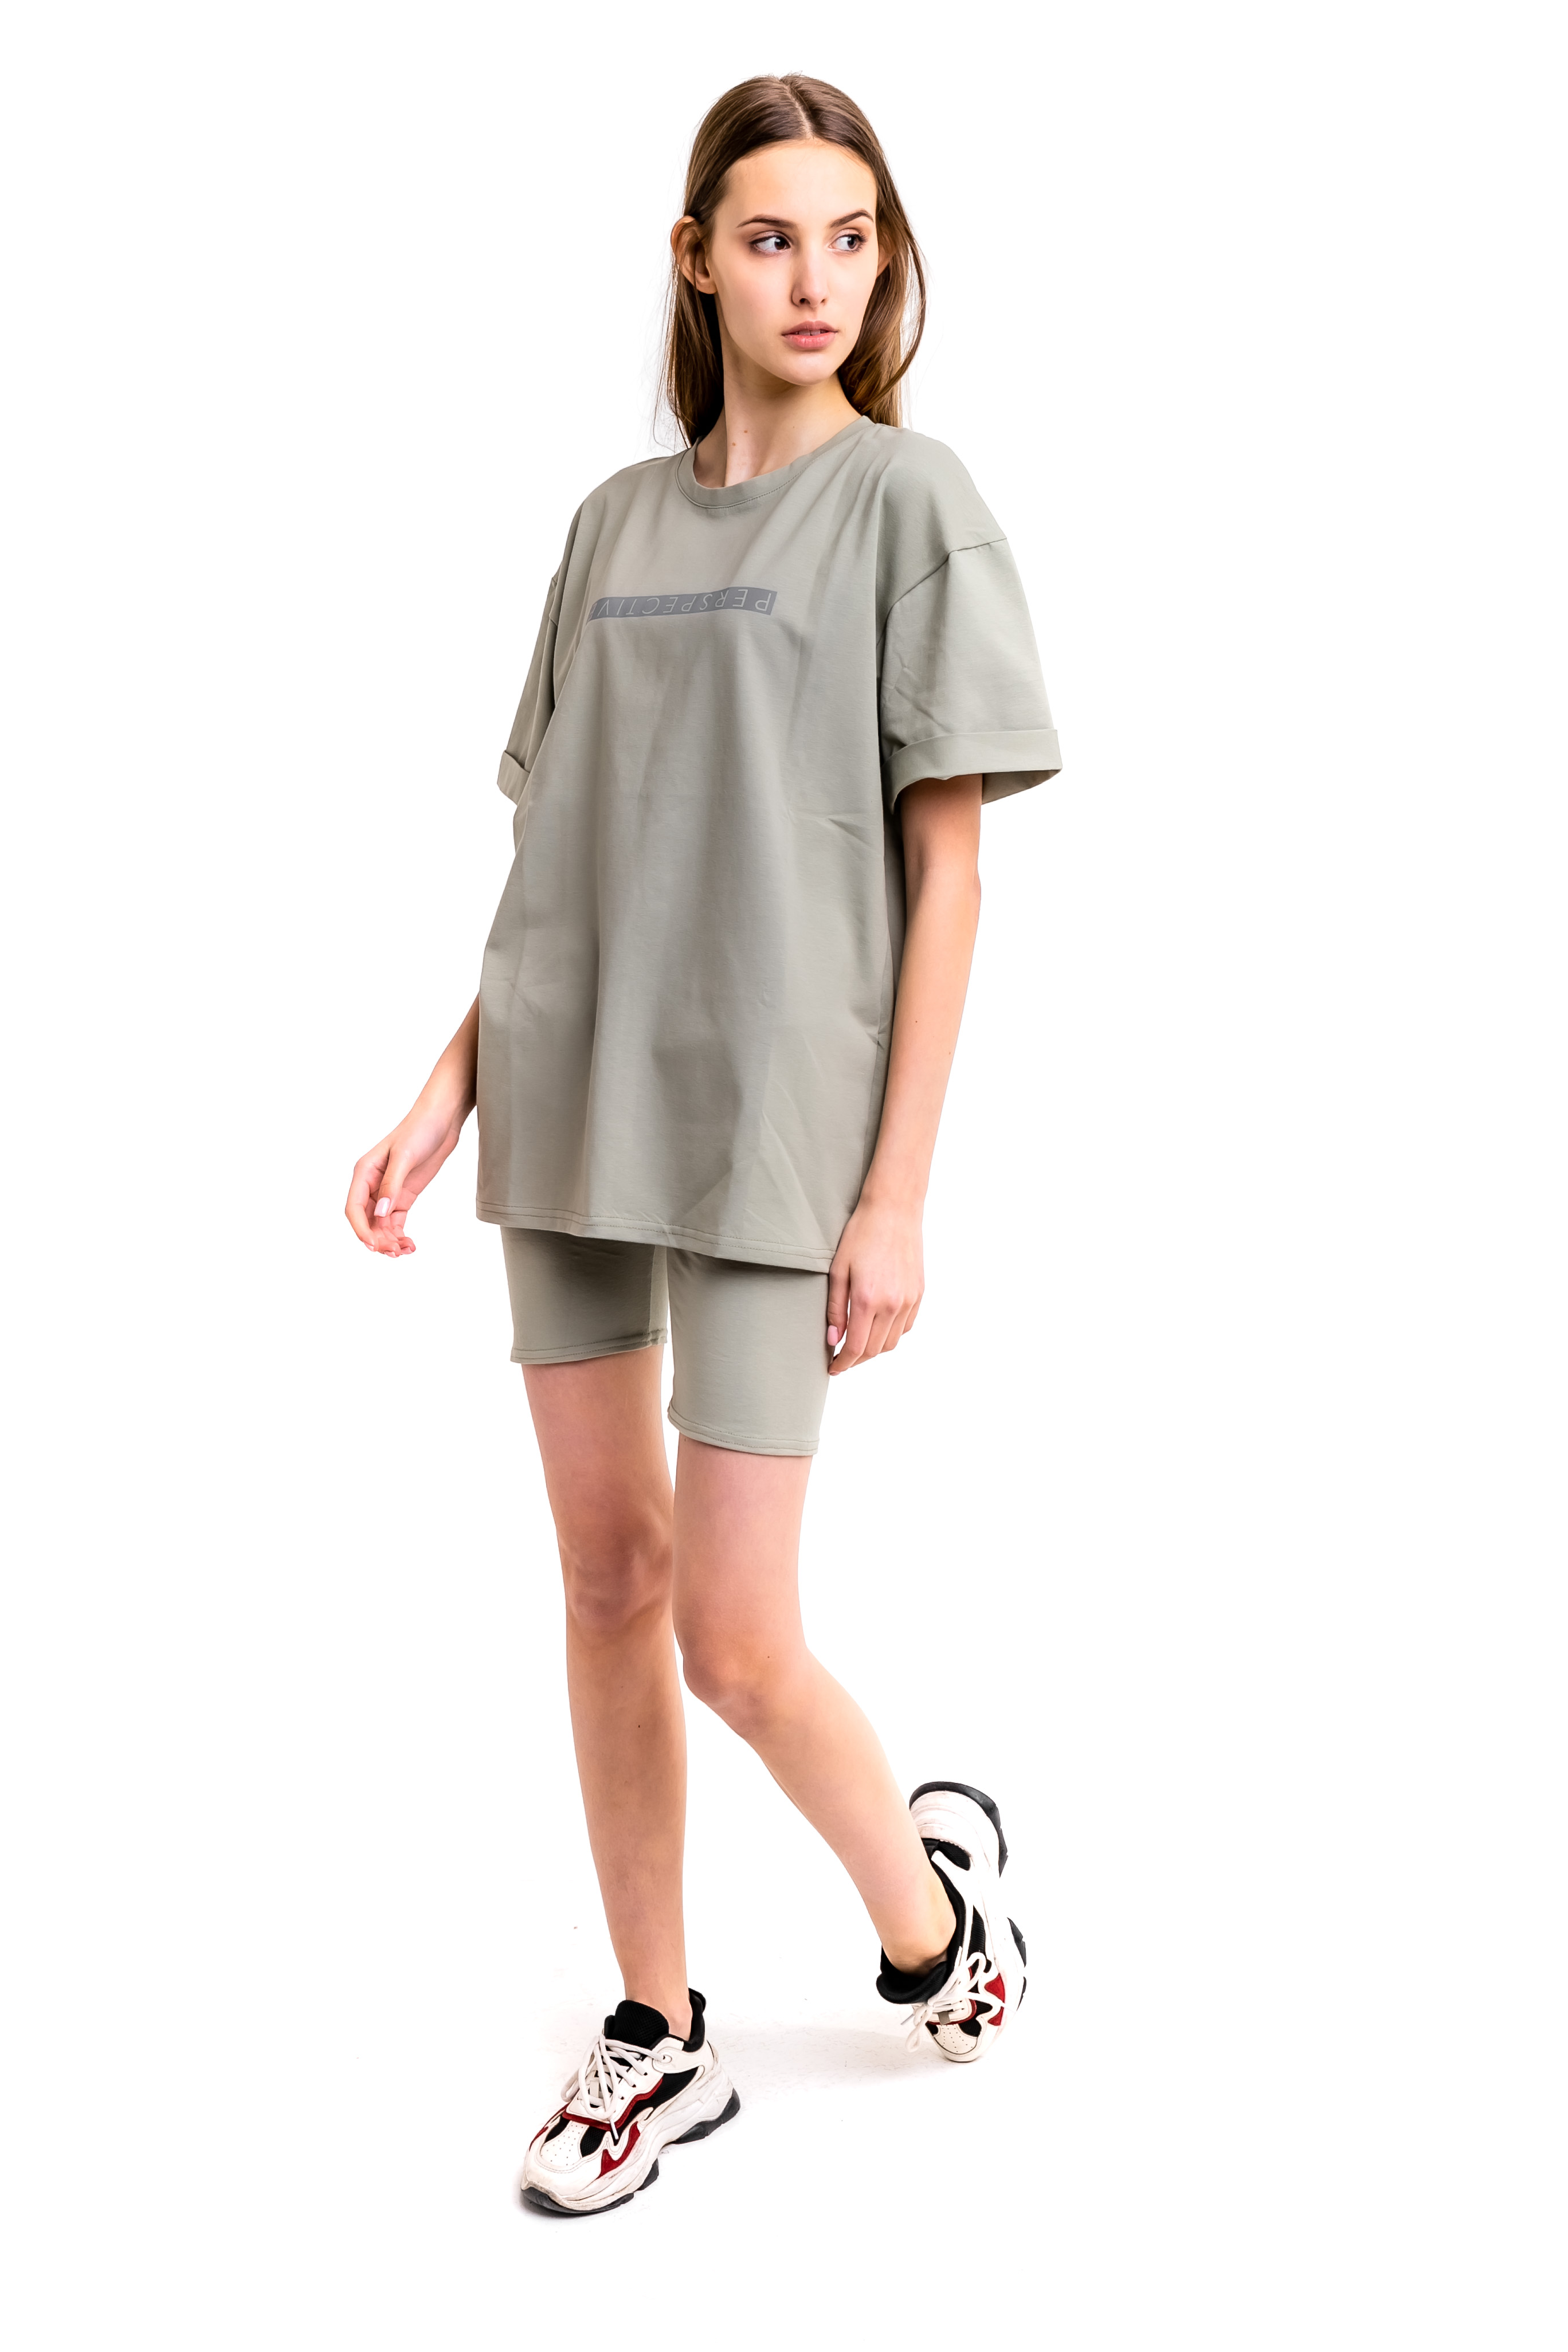 Женский костюм футболка + шорты Comfort S-M Оливковый с рефлективным принтом (1617191342 )